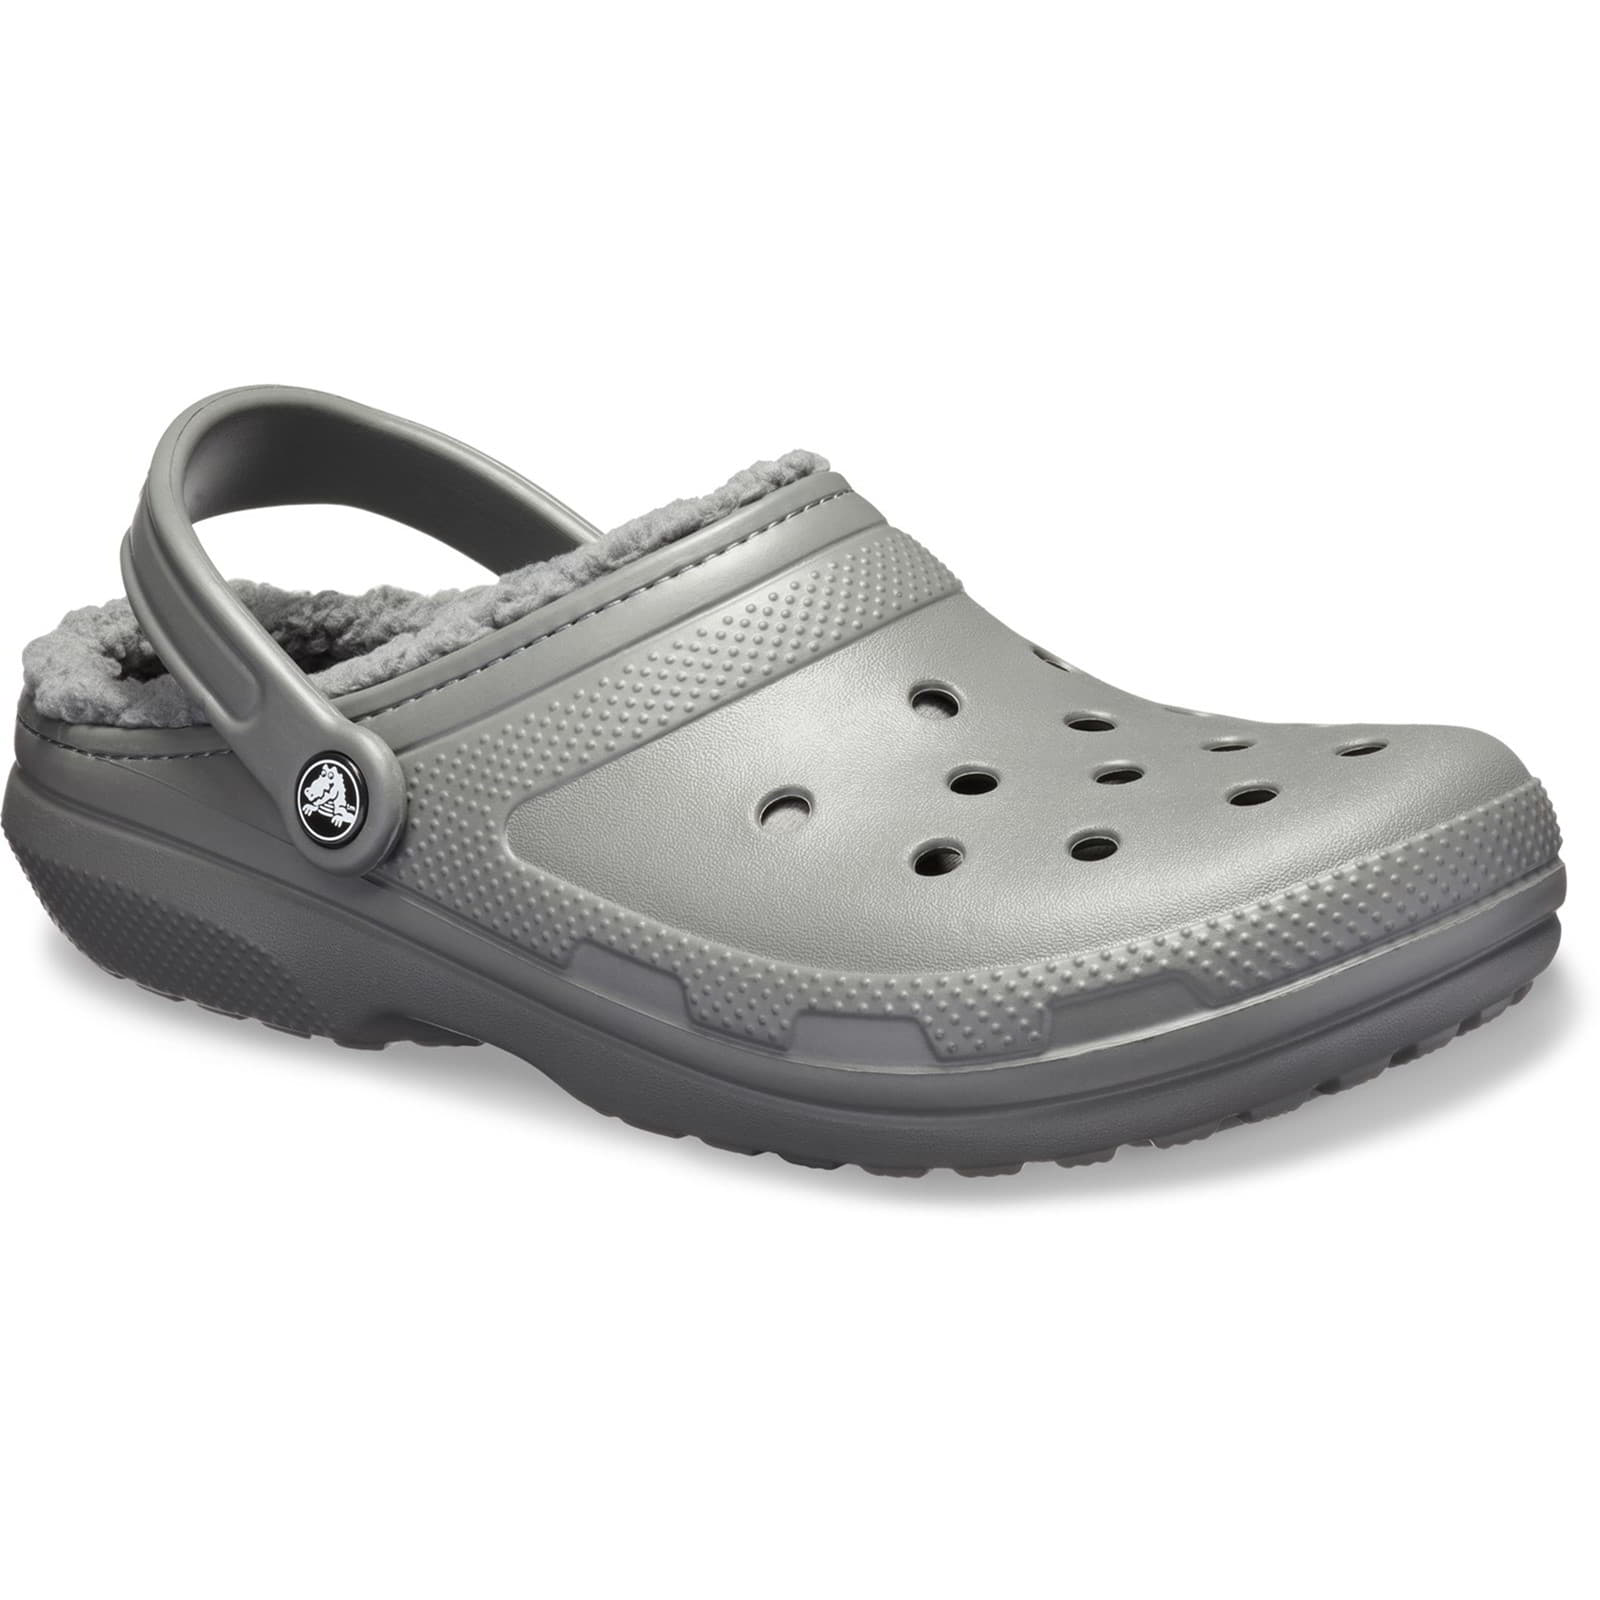 Crocs Men's Women's Classic Lined Clog Warm Slip On Slippers Shoes - UK M7-W8 / EU 41-42 / US M8-W10